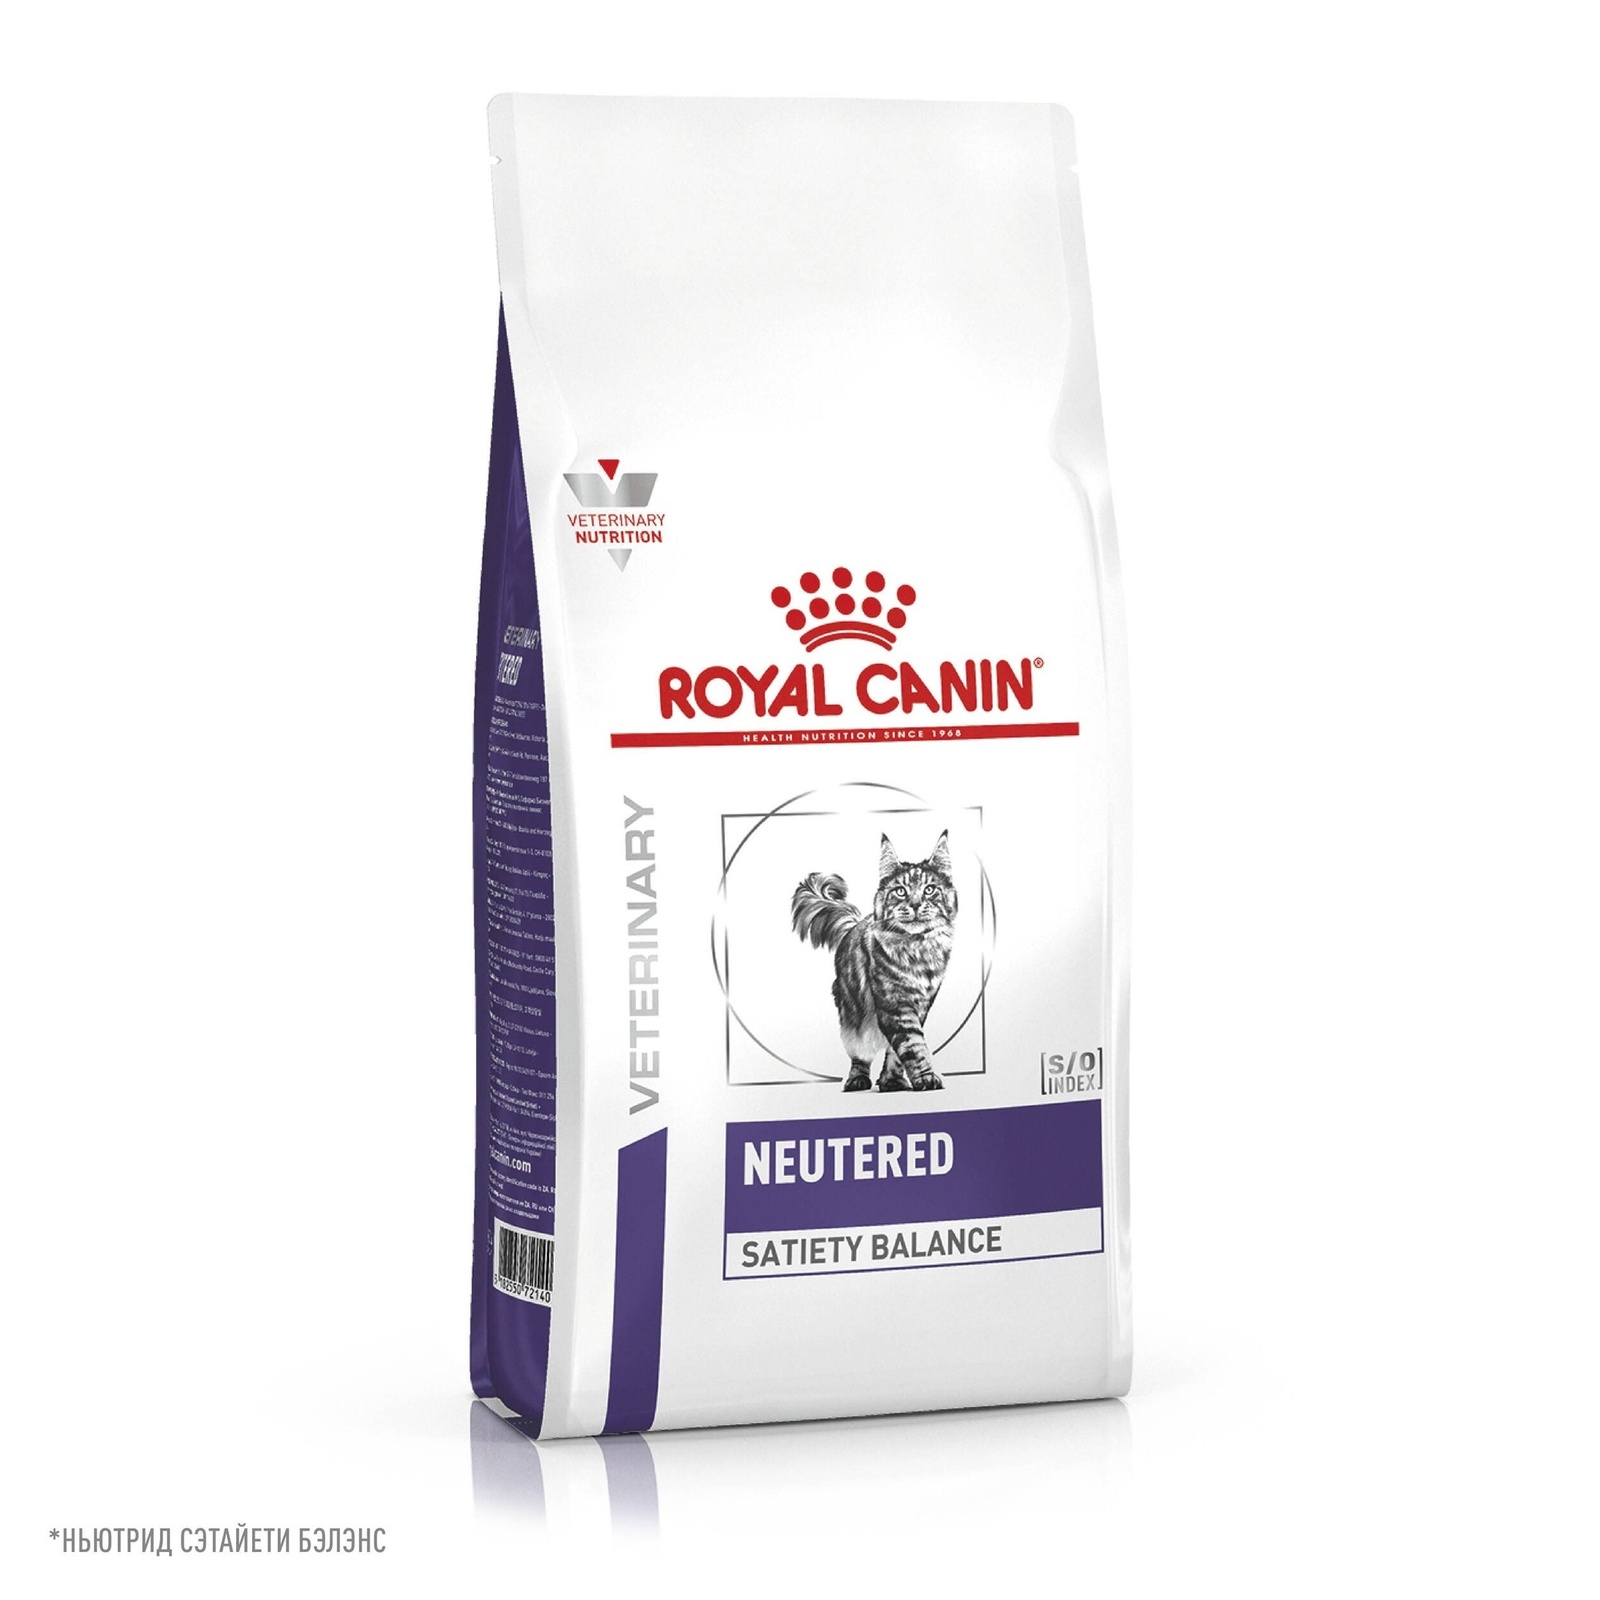 Royal Canin (вет.корма) Royal Canin (вет.корма) для кастрированных котов и кошек, с пониженной калорийностью для профилактики МКБ (8 кг)